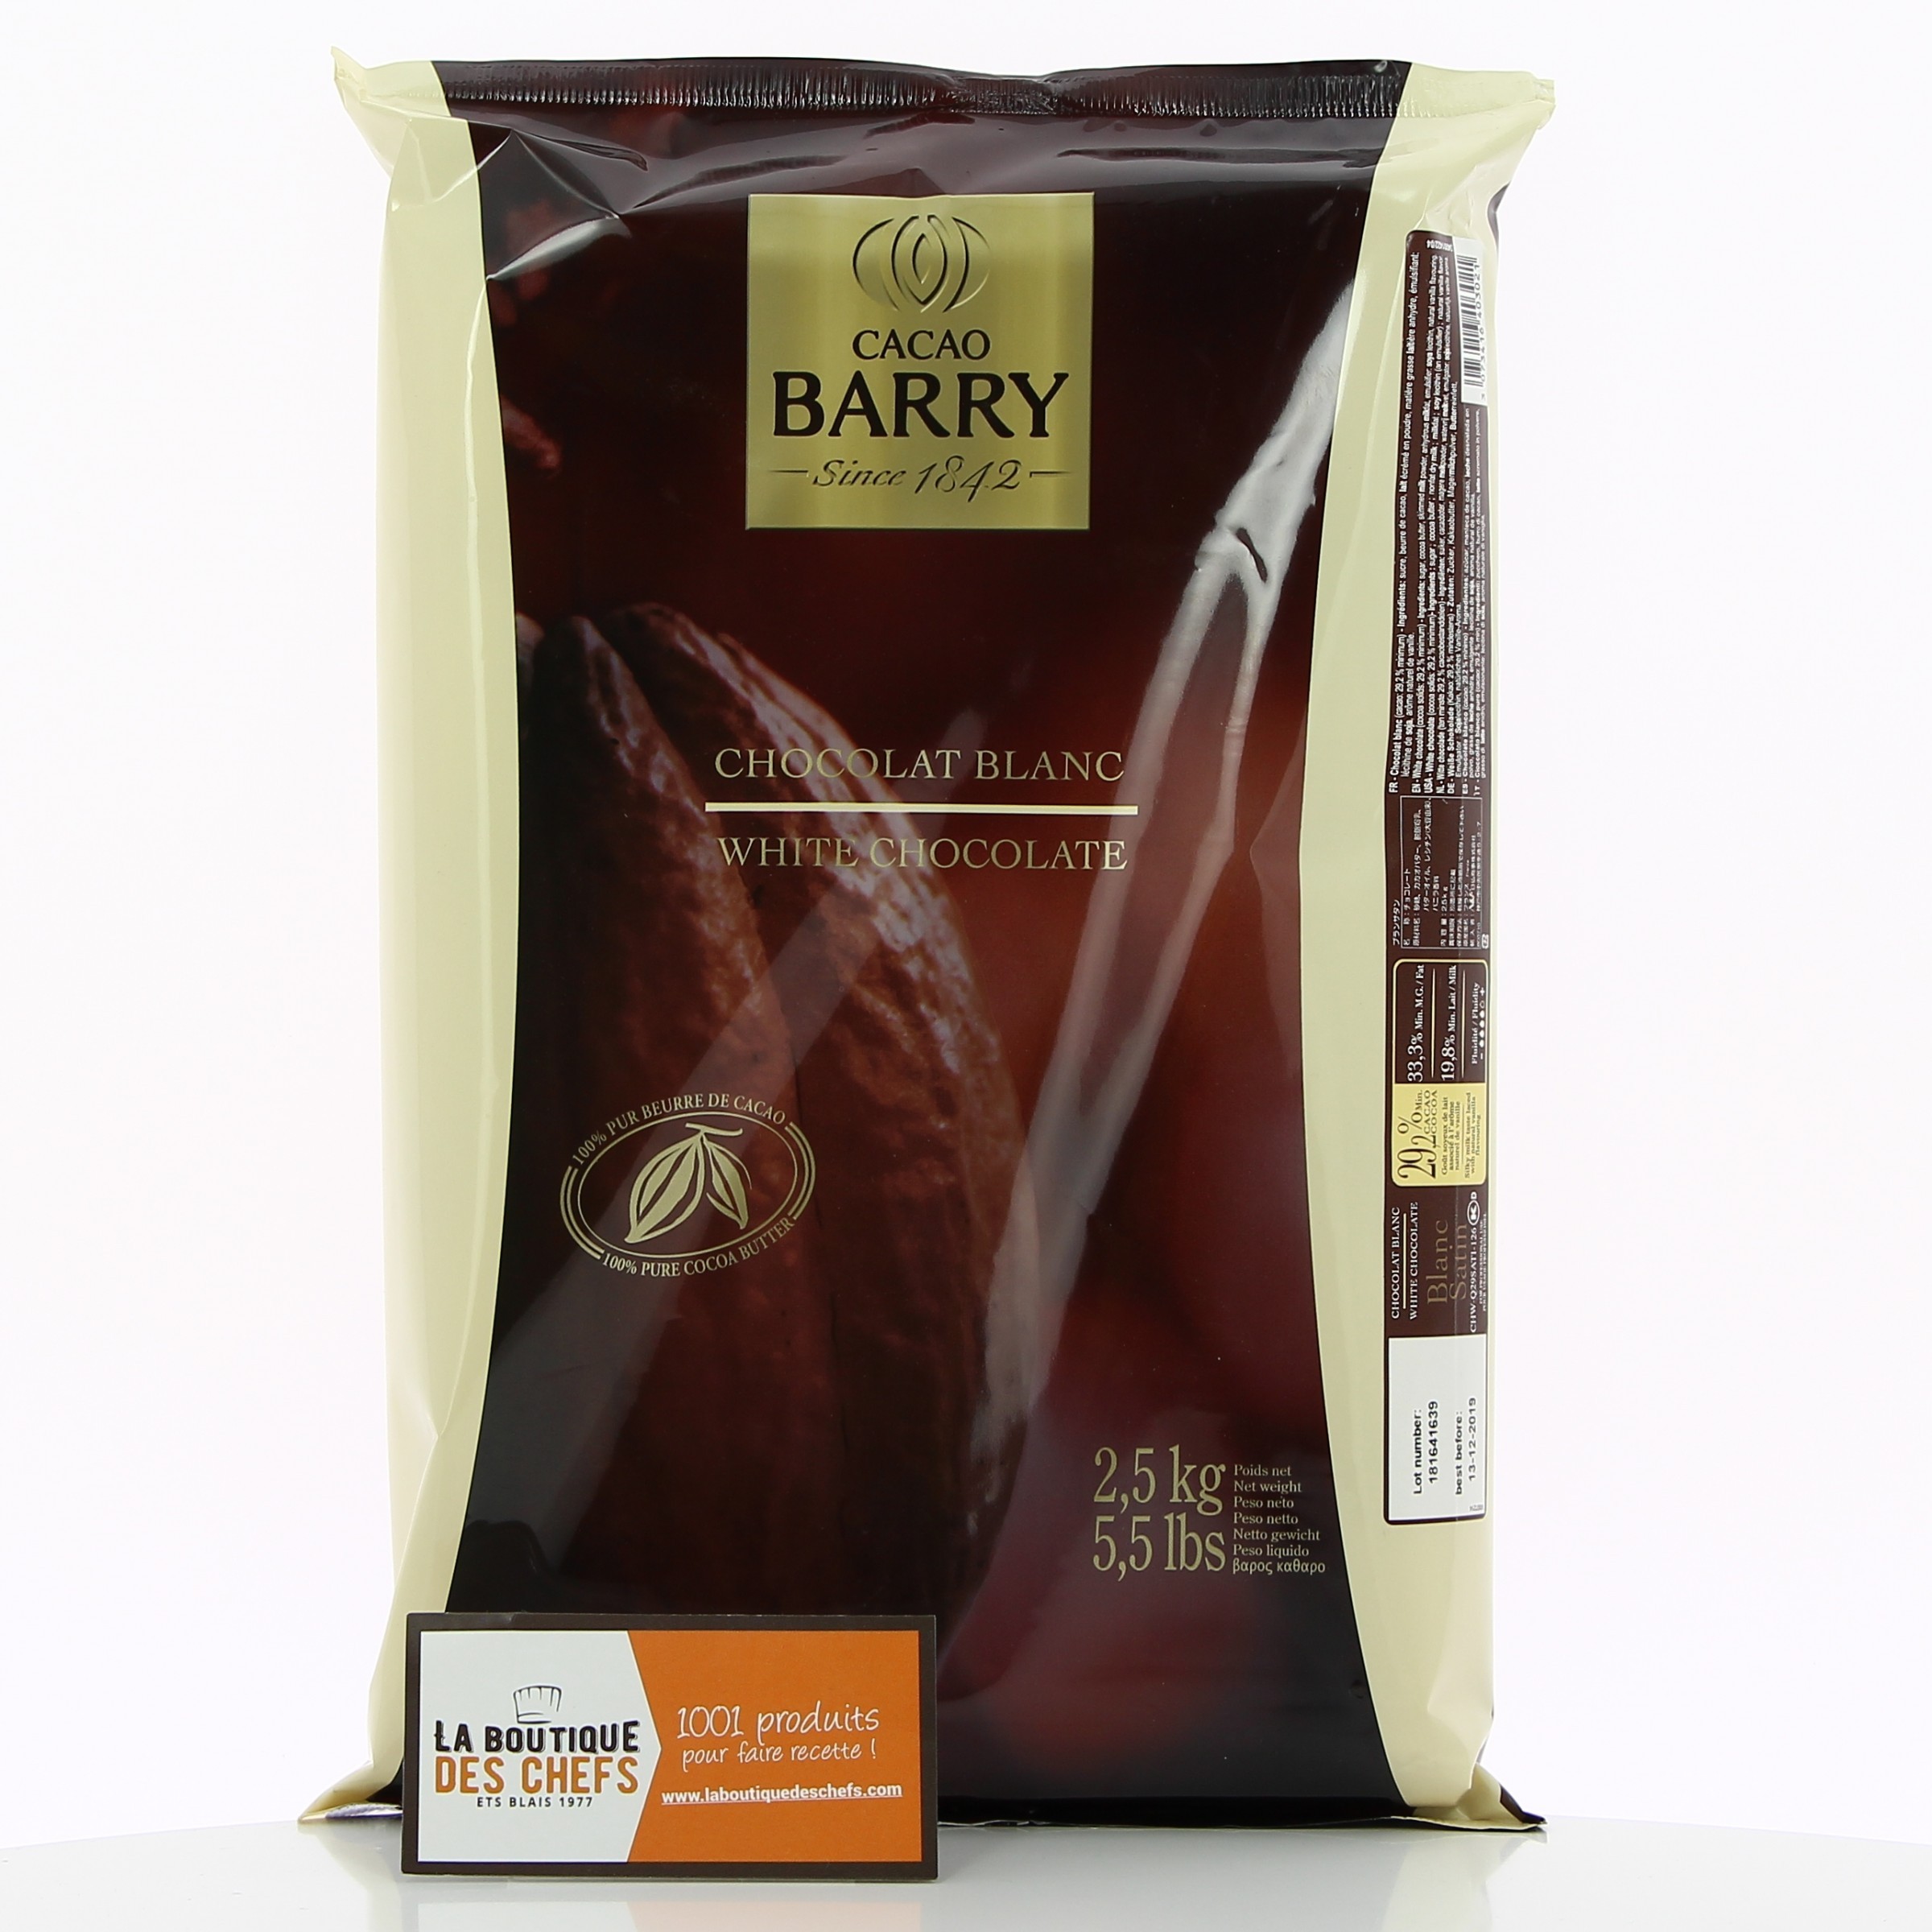 Pistoles de chocolat blanc 1 Kg Cacao Barry W3 - Chocolat de couverture